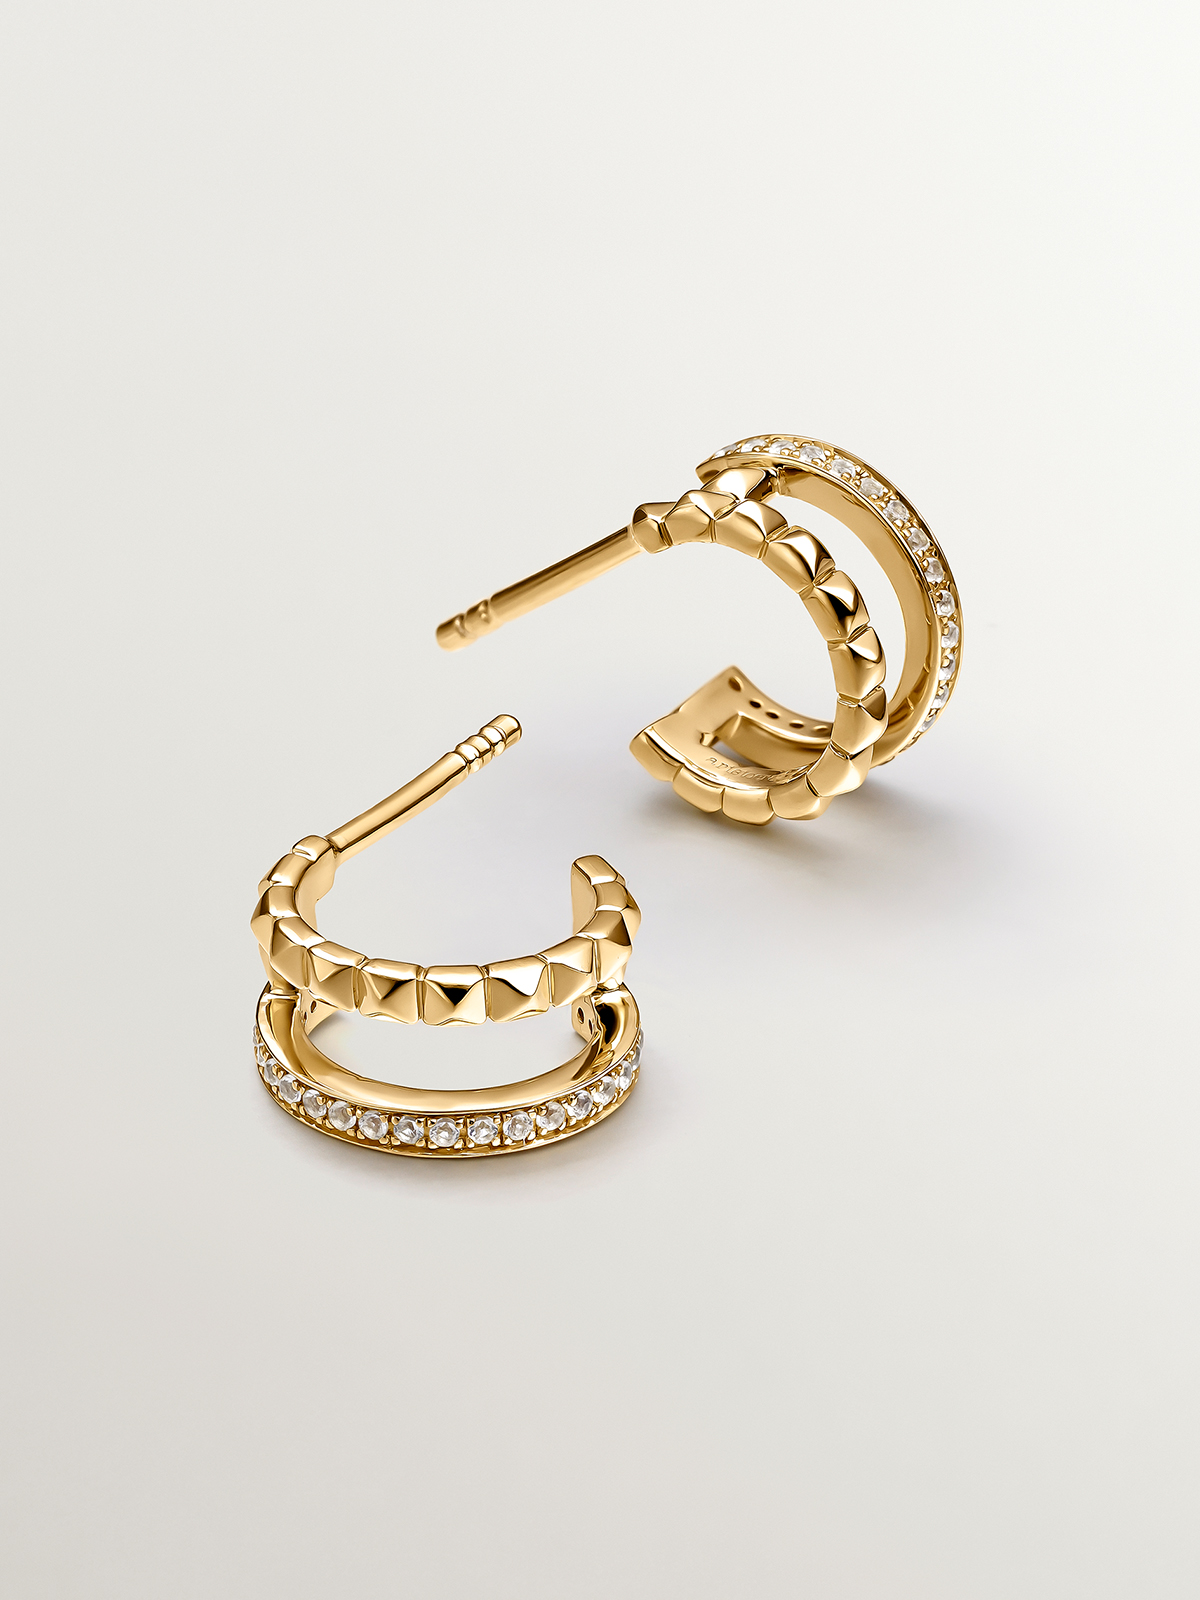 Petites boucles d'oreilles à double anneau en argent 925 plaqué or jaune 18K avec relief et topazes blanches.